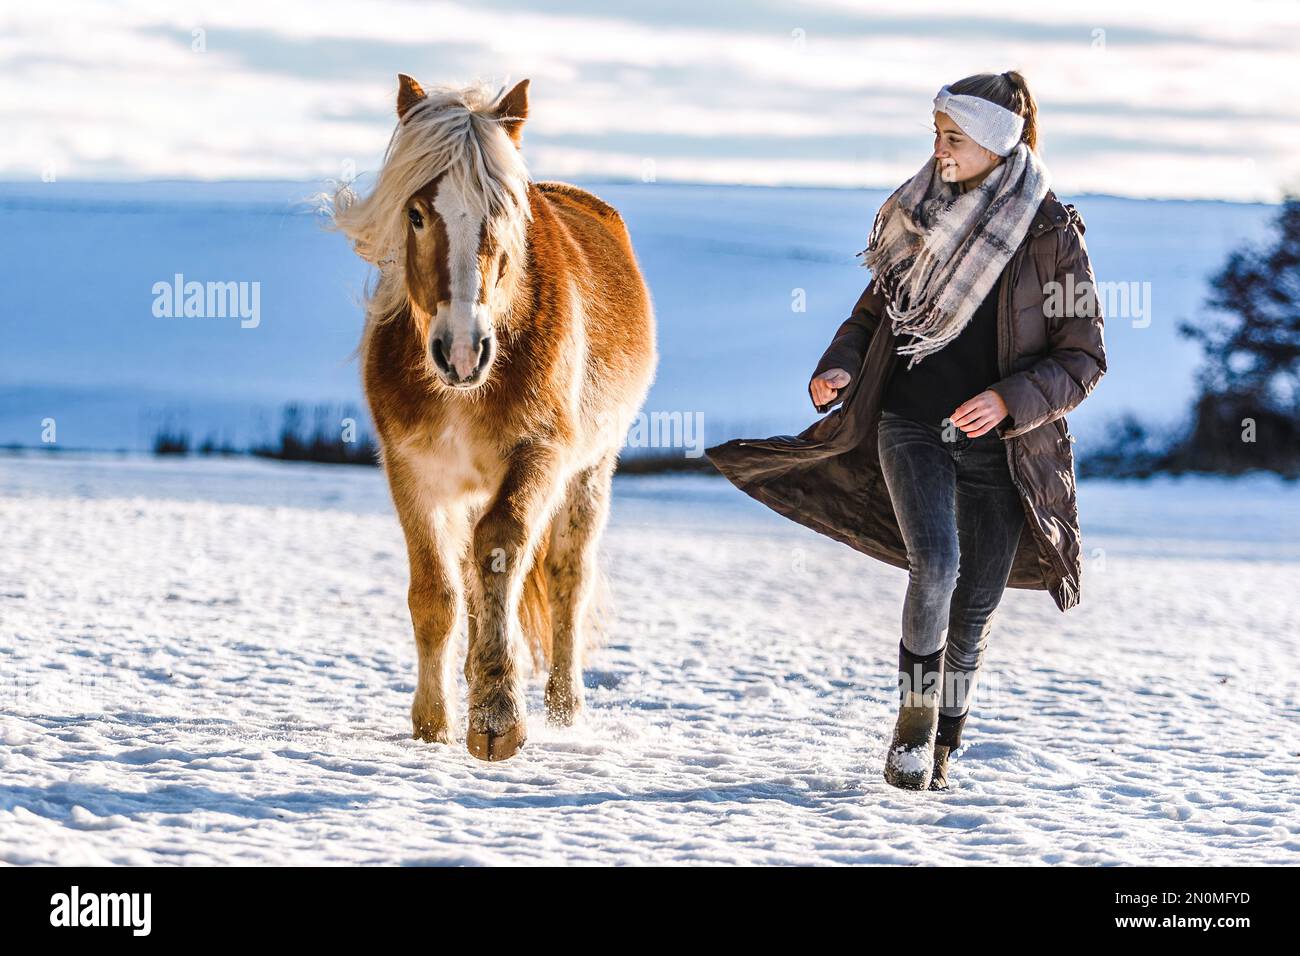 Süße Pferde- und Freundschaftsszene: Ein junges Mädchen im Teenageralter interagiert im Winter vor einer verschneiten ländlichen Landschaft mit ihrem haflinger-Pferd Stockfoto